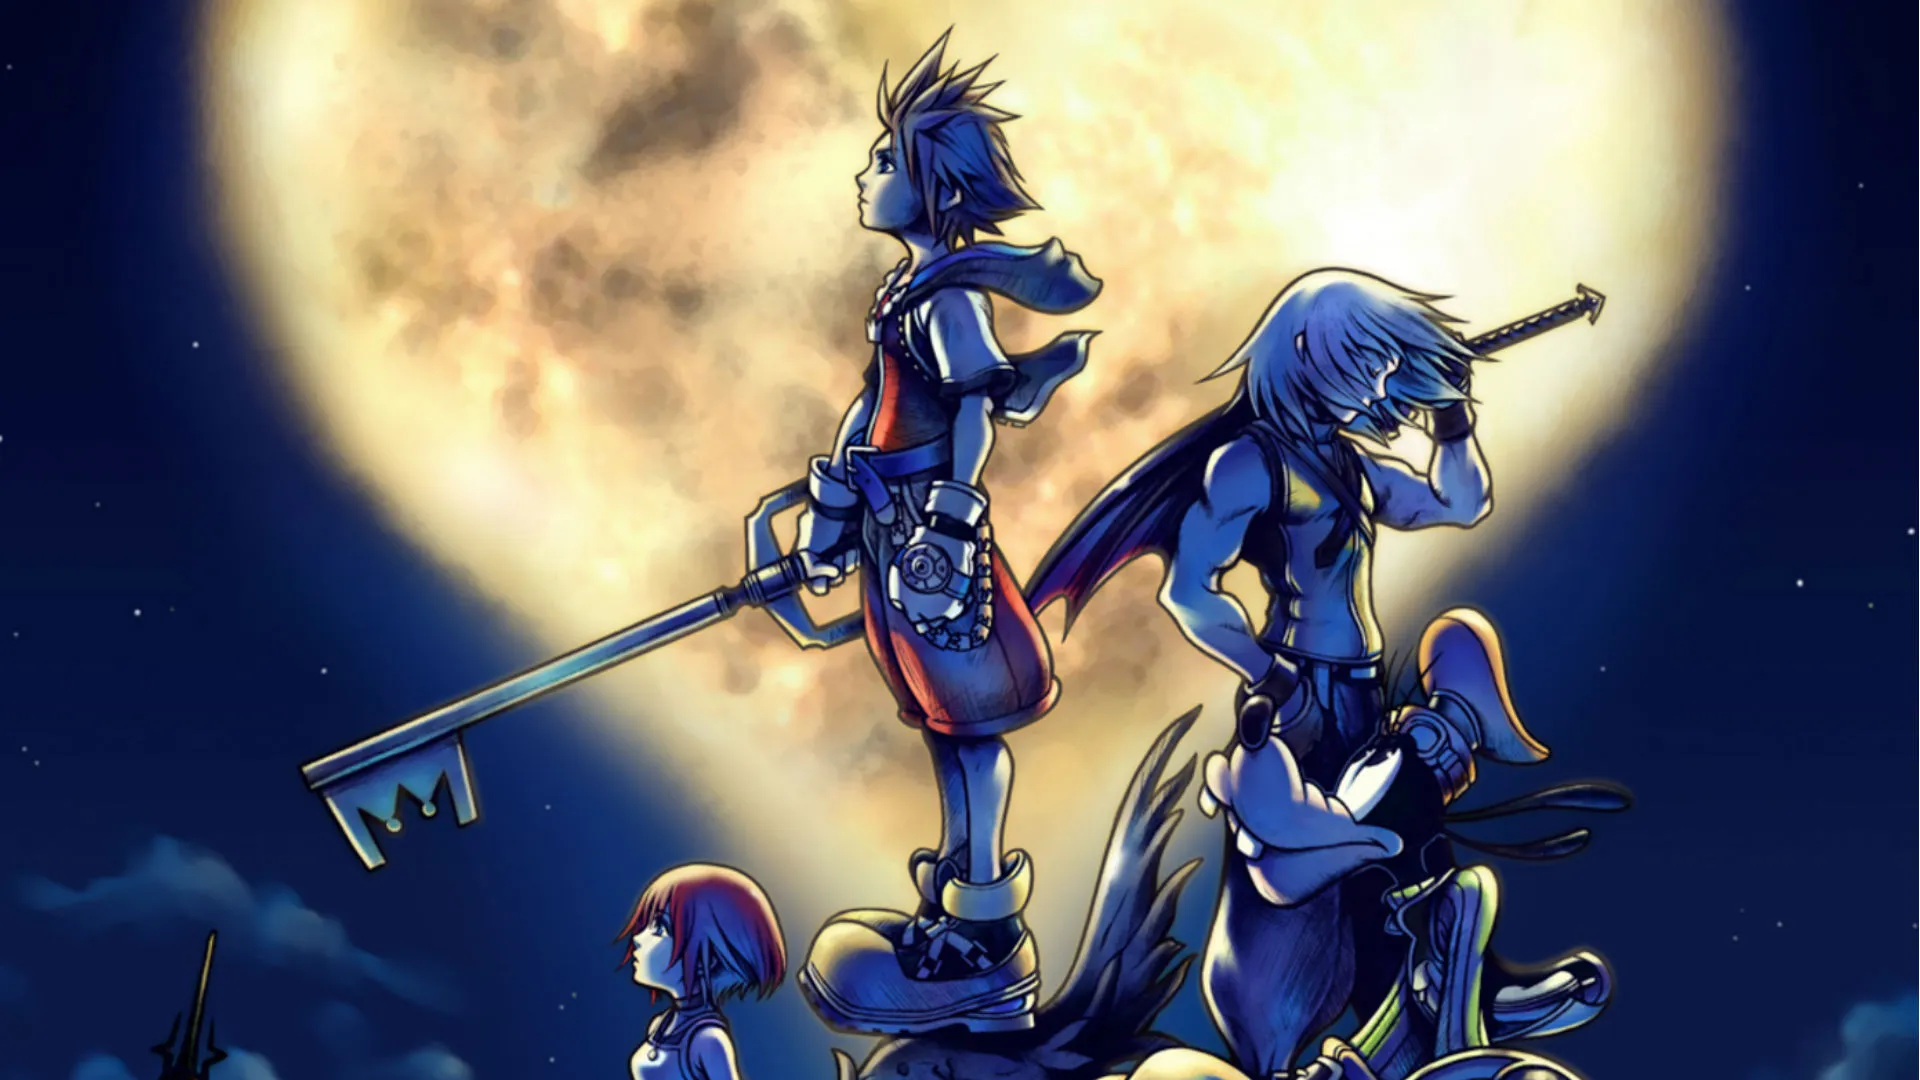 Square Enix opublikowało osobny film wyjaśniający kolejność, w jakiej należy grać w gry Kingdom Hearts